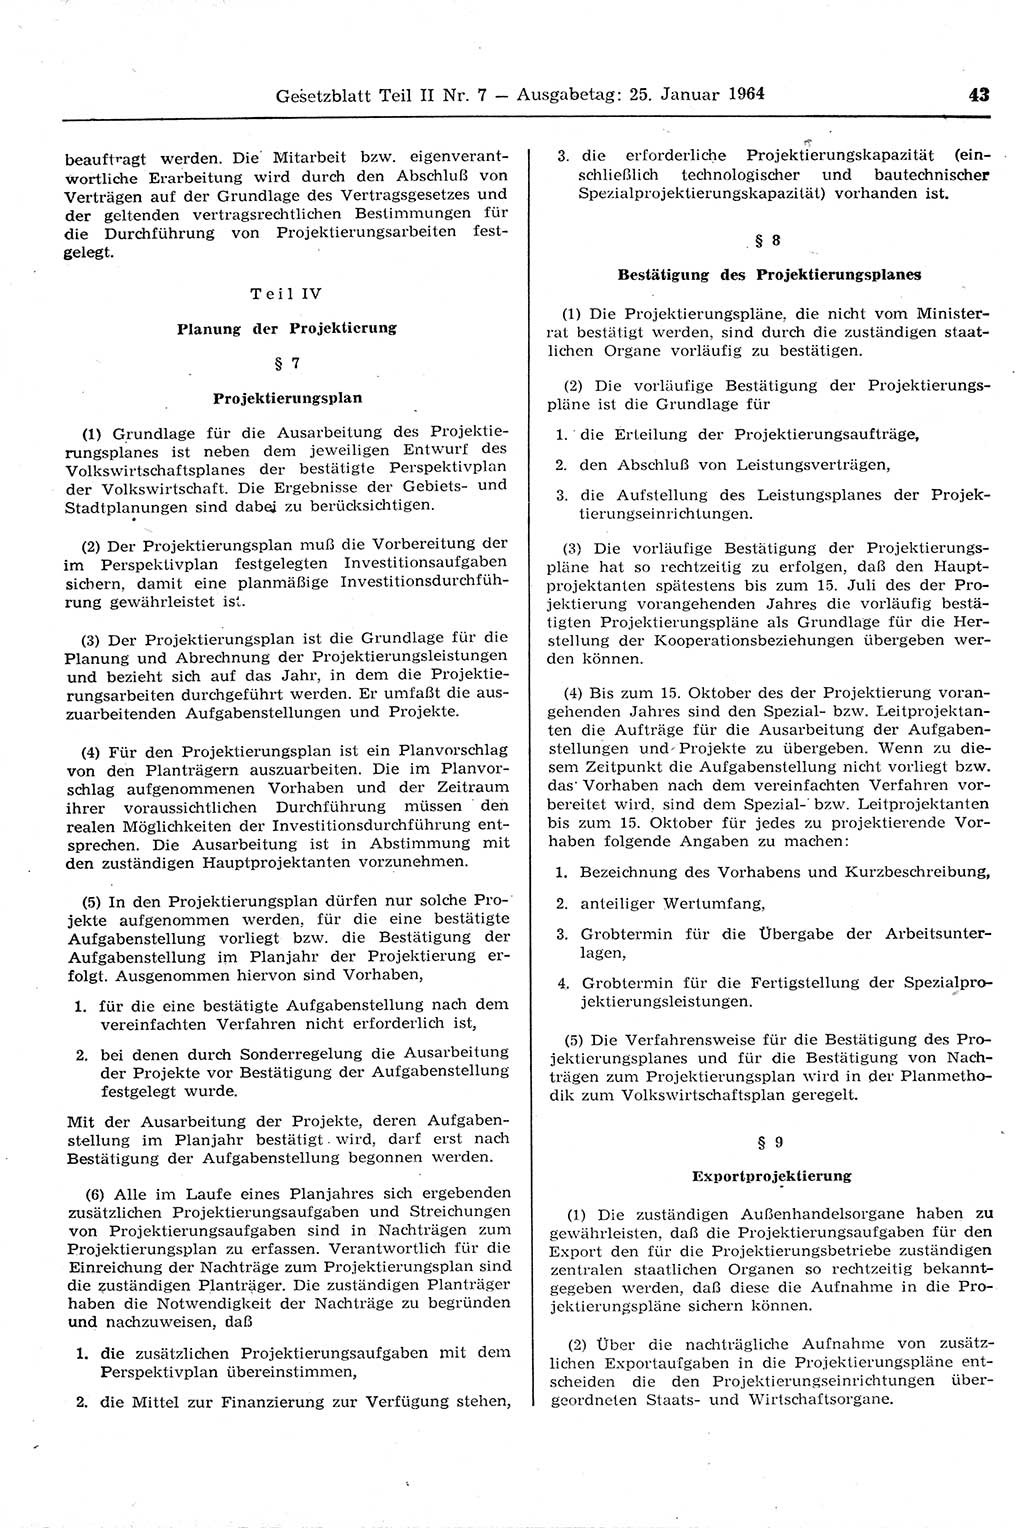 Gesetzblatt (GBl.) der Deutschen Demokratischen Republik (DDR) Teil ⅠⅠ 1964, Seite 43 (GBl. DDR ⅠⅠ 1964, S. 43)